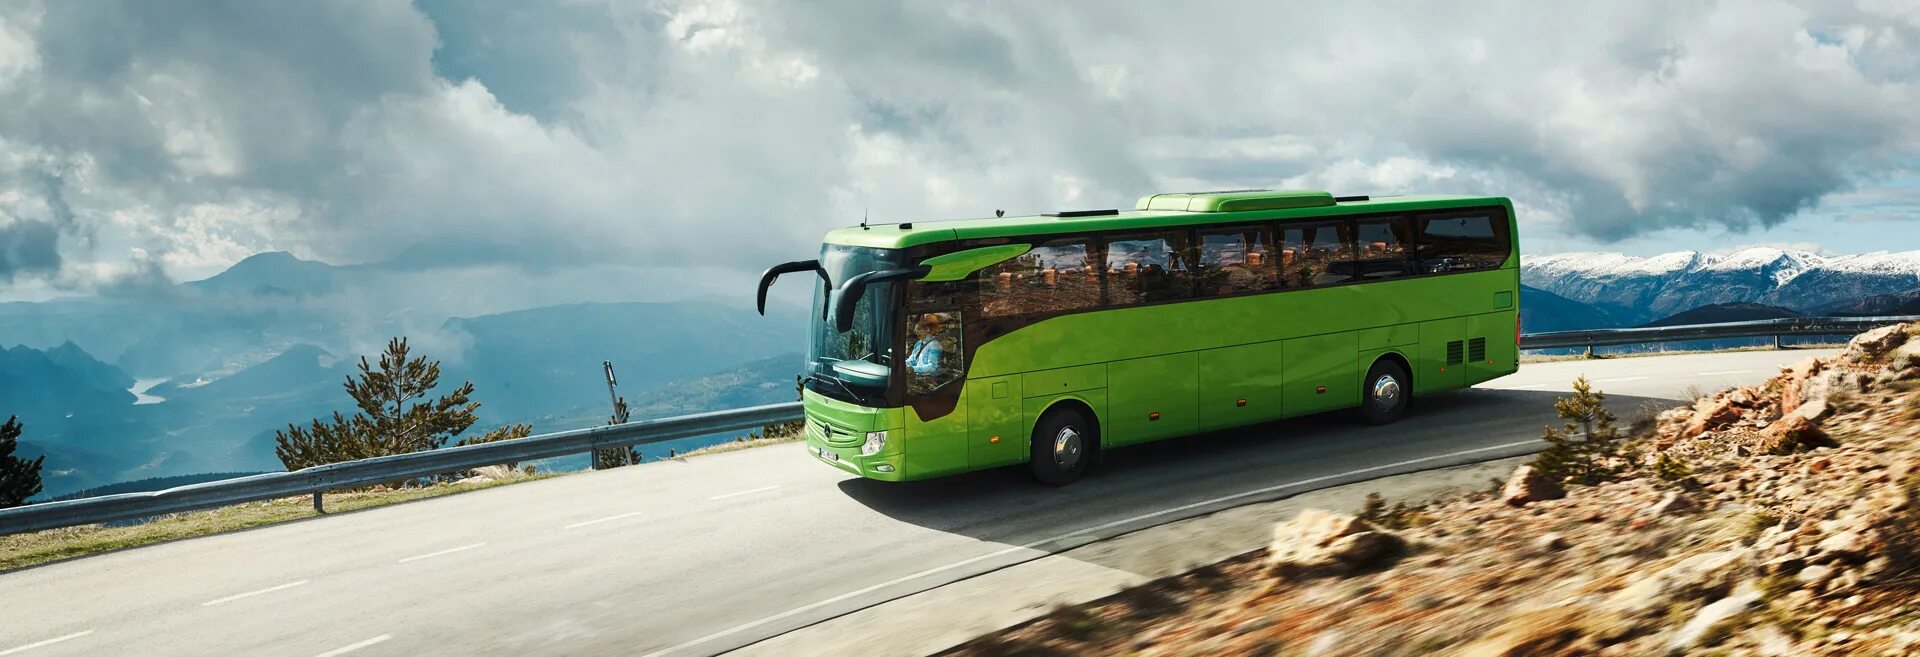 Автобус едет в горы. Mercedes-Benz Tourismo. Туристический автобус Мерседес Бенц. Туристский автобус. Красивый автобус.